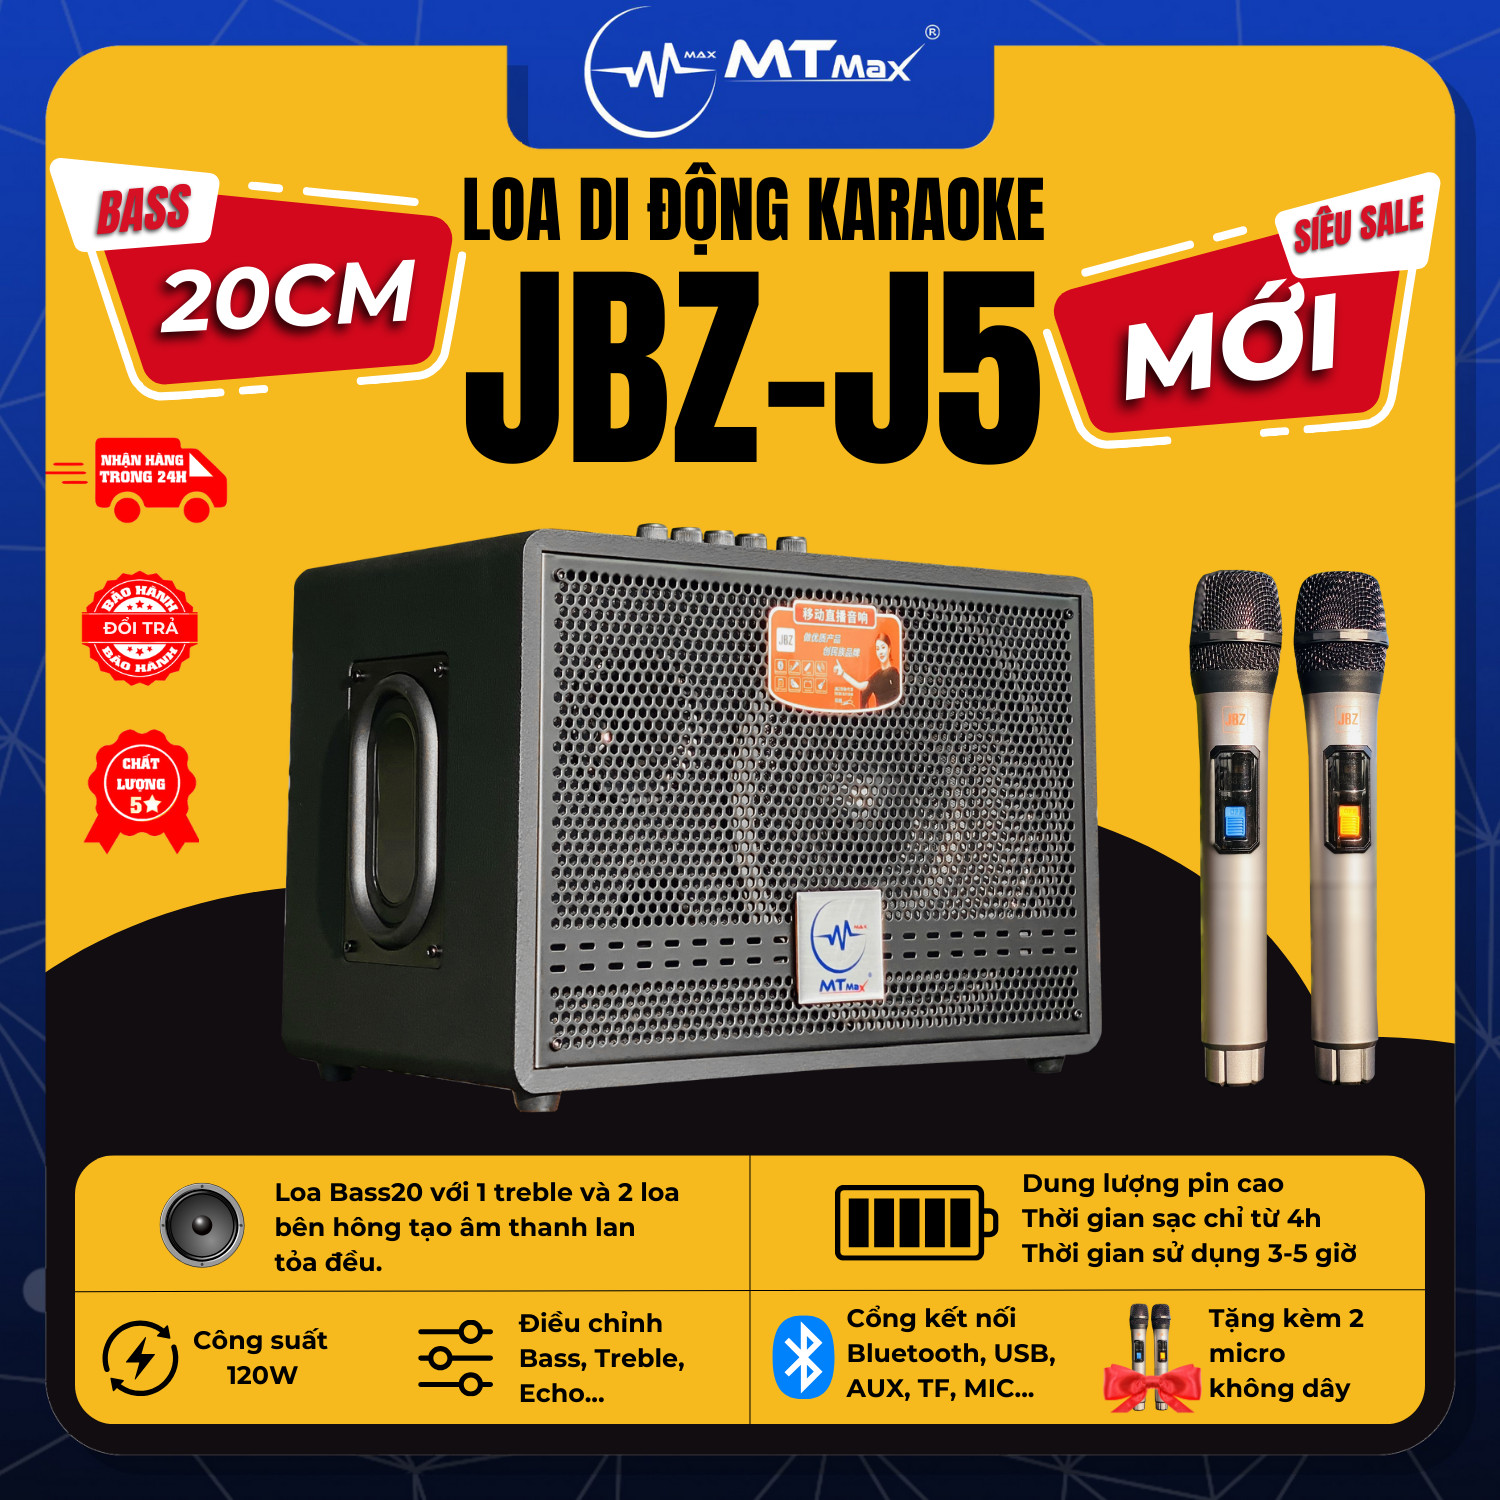 Loa Xách Tay Di Động JBZ J5 Bass 20cm Siêu Trầm Kèm 2 Micro Không Dây Bảo Hành 12 Tháng Hàng Chính Hãng